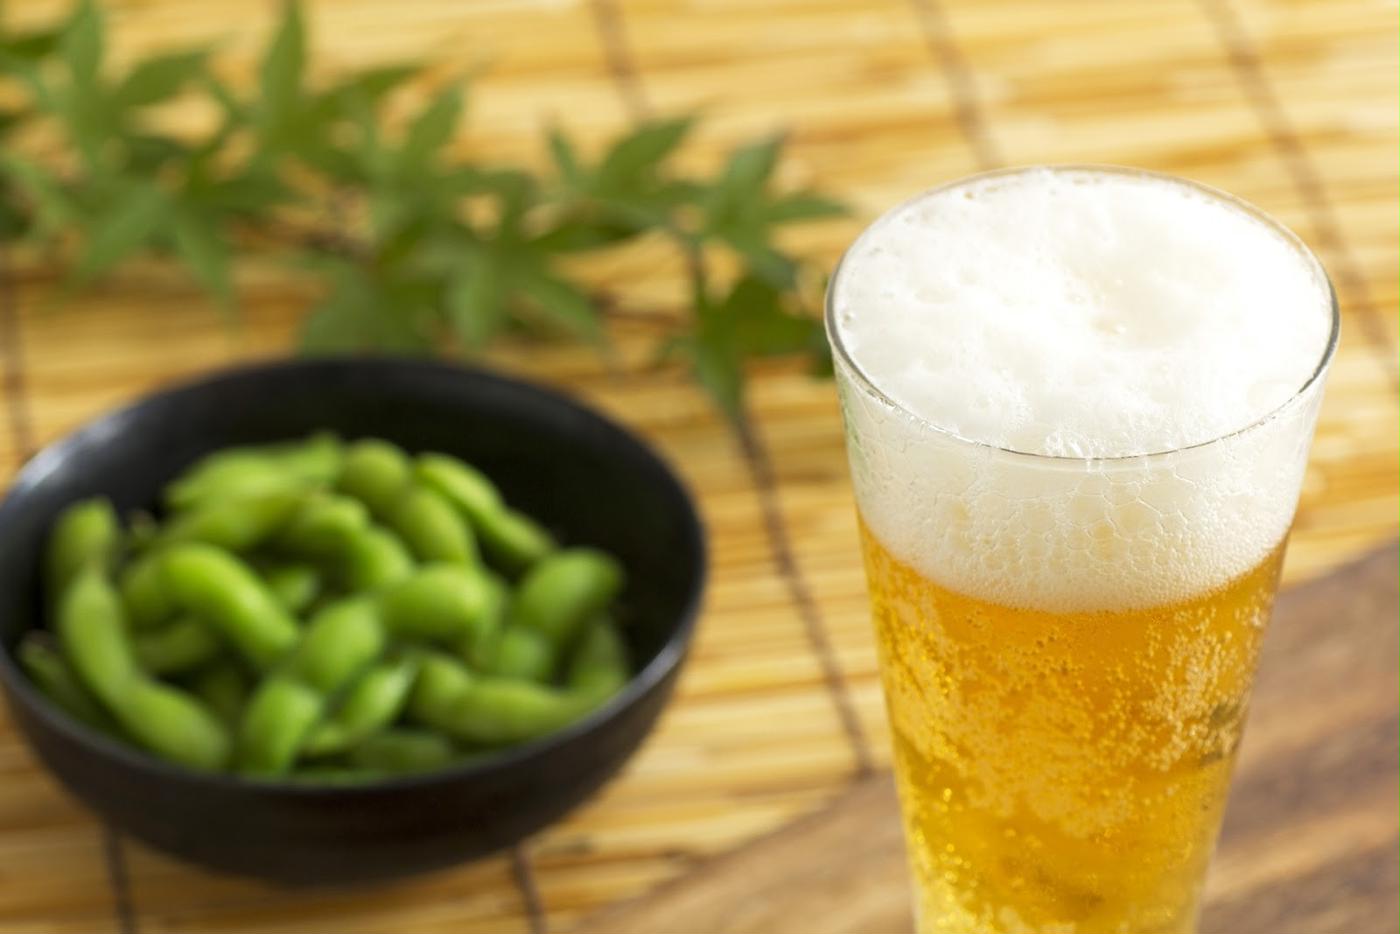 枝豆とビールは栄養面でも最強の組み合わせ 枝豆の栄養素や買いポイントを解説 トクバイニュース